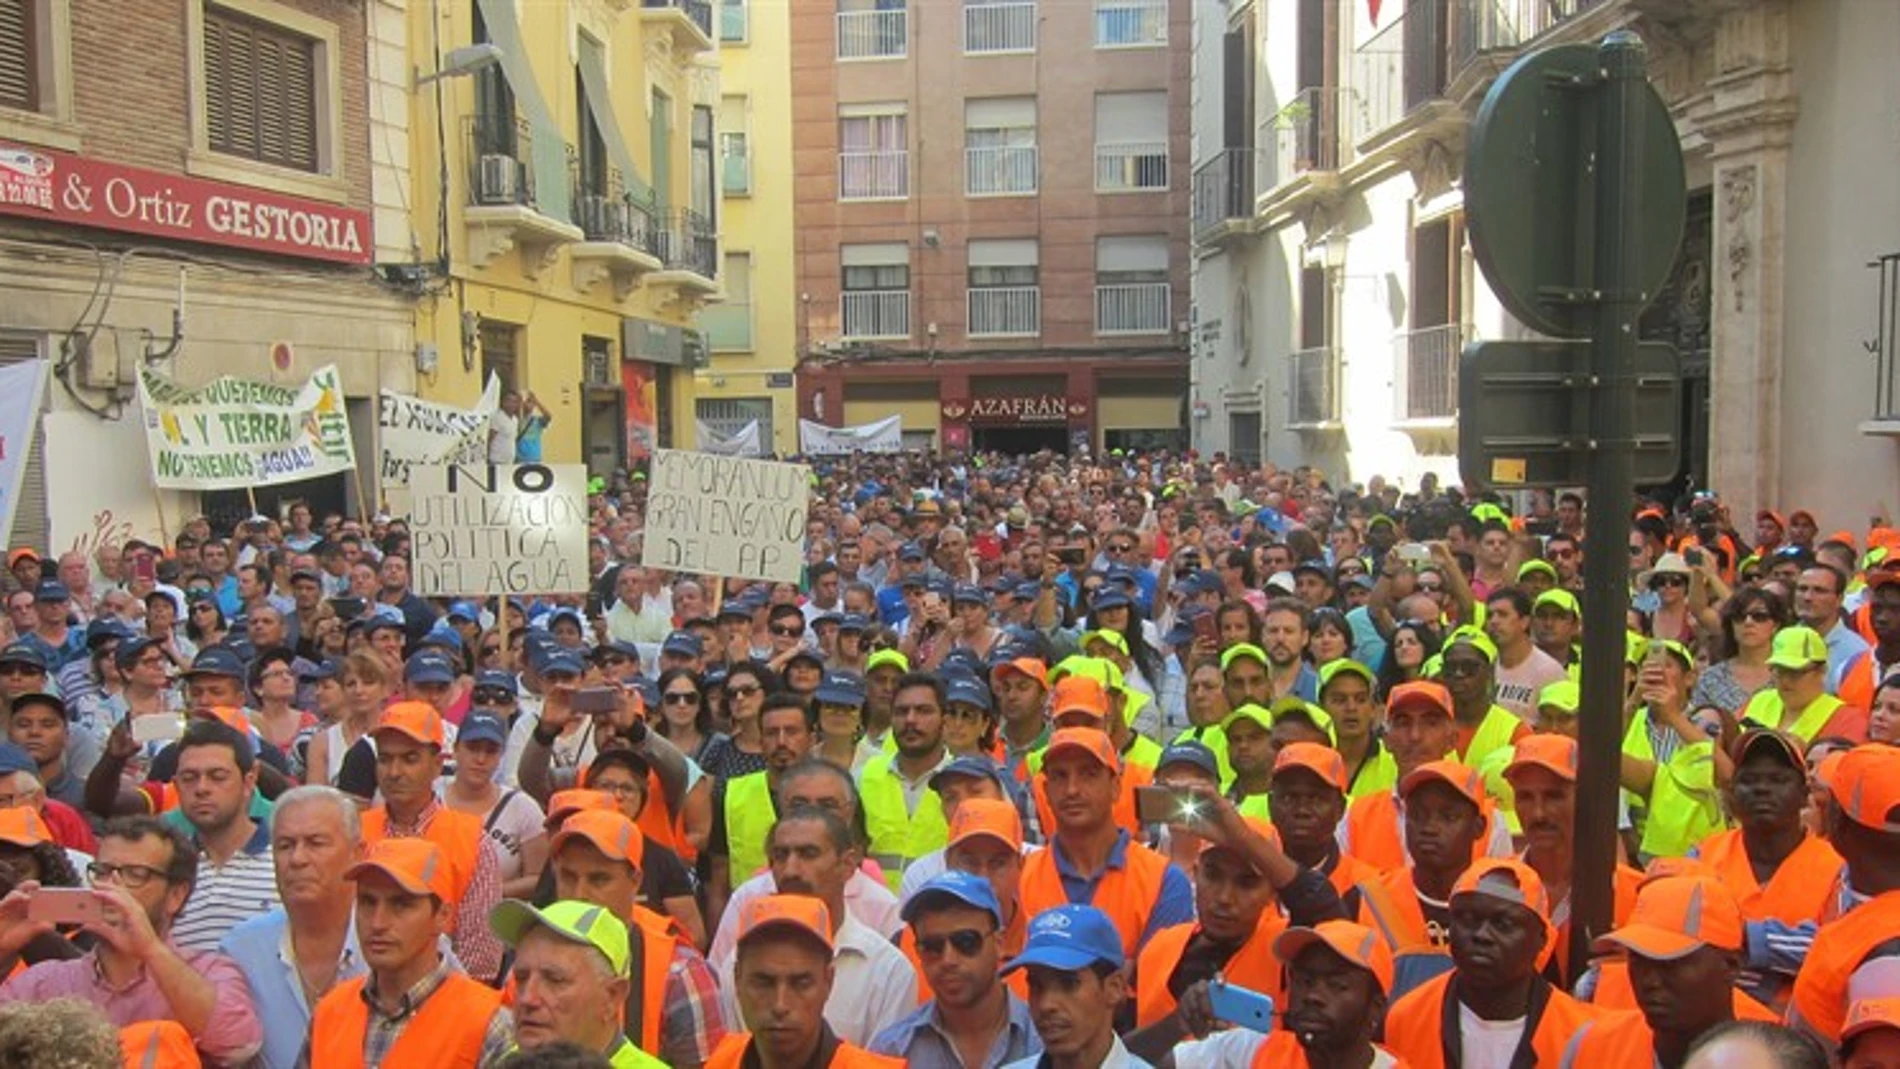 Panorámica de la manifestación de los agricultores que colapso la ciudad de Murcia